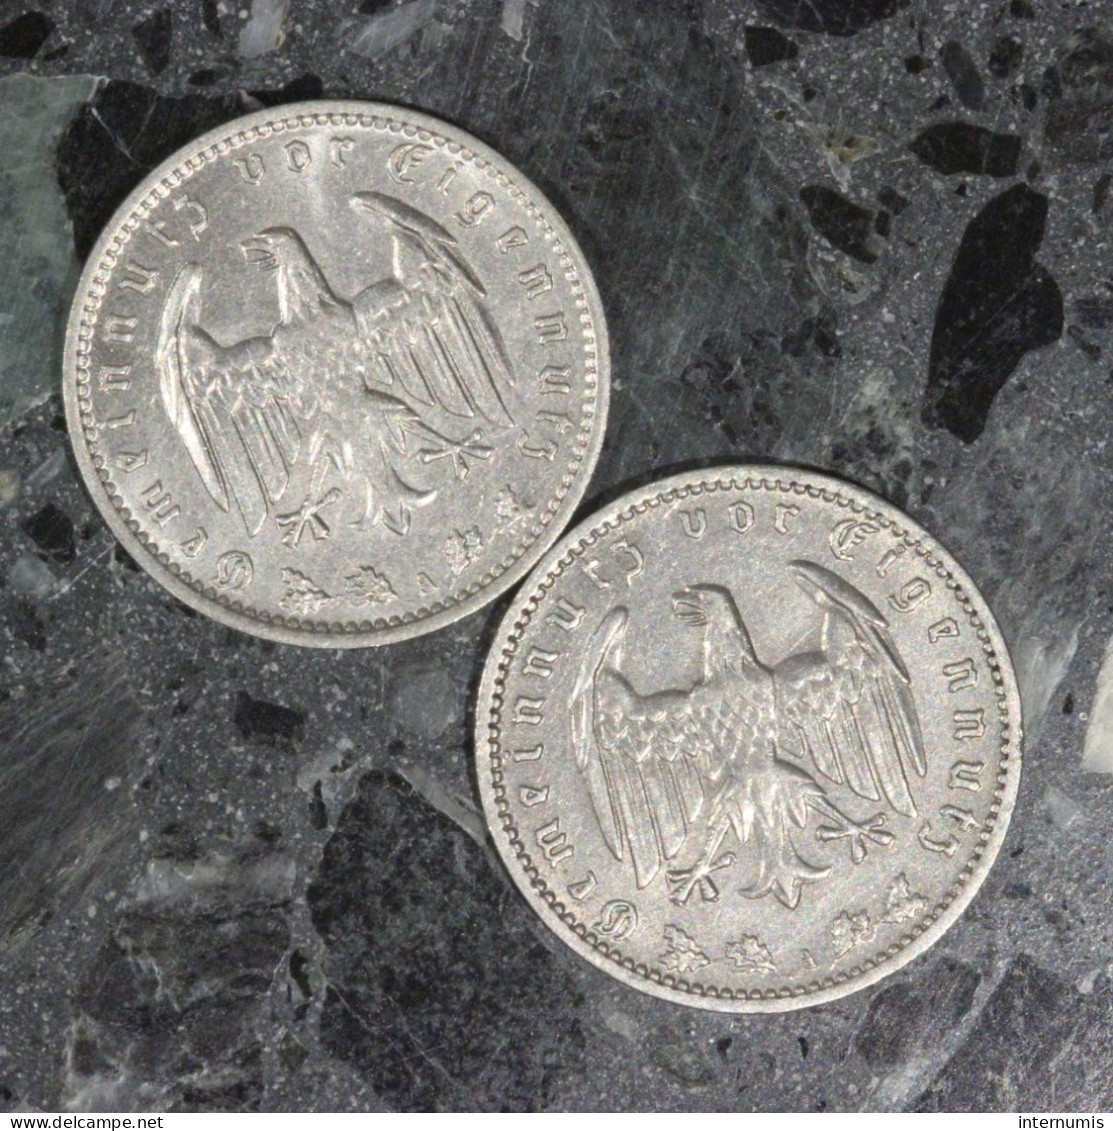 LOT (2) : 1 Mark 1935-A & 1937-A Allemagne / Germany, , 1 Reichsmark, 1935 & 1937, , Nickel, ,
KM# - Kiloware - Münzen